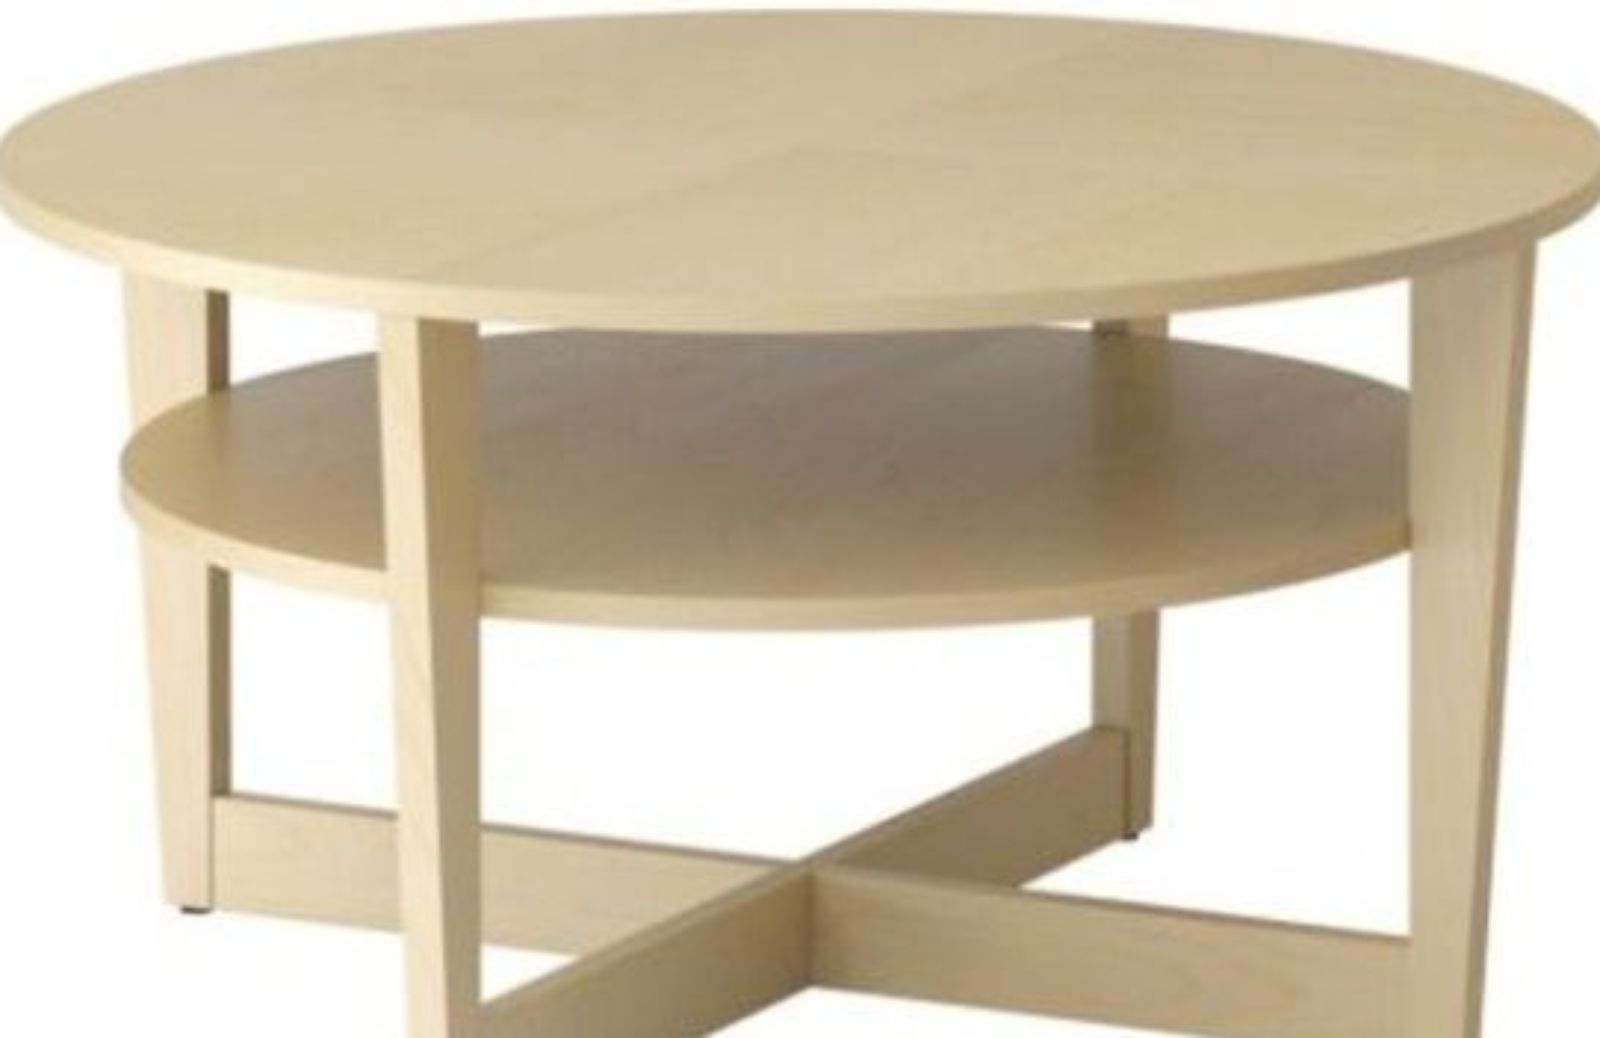 Come personalizzare i tavolini in legno Ikea con la craquelure